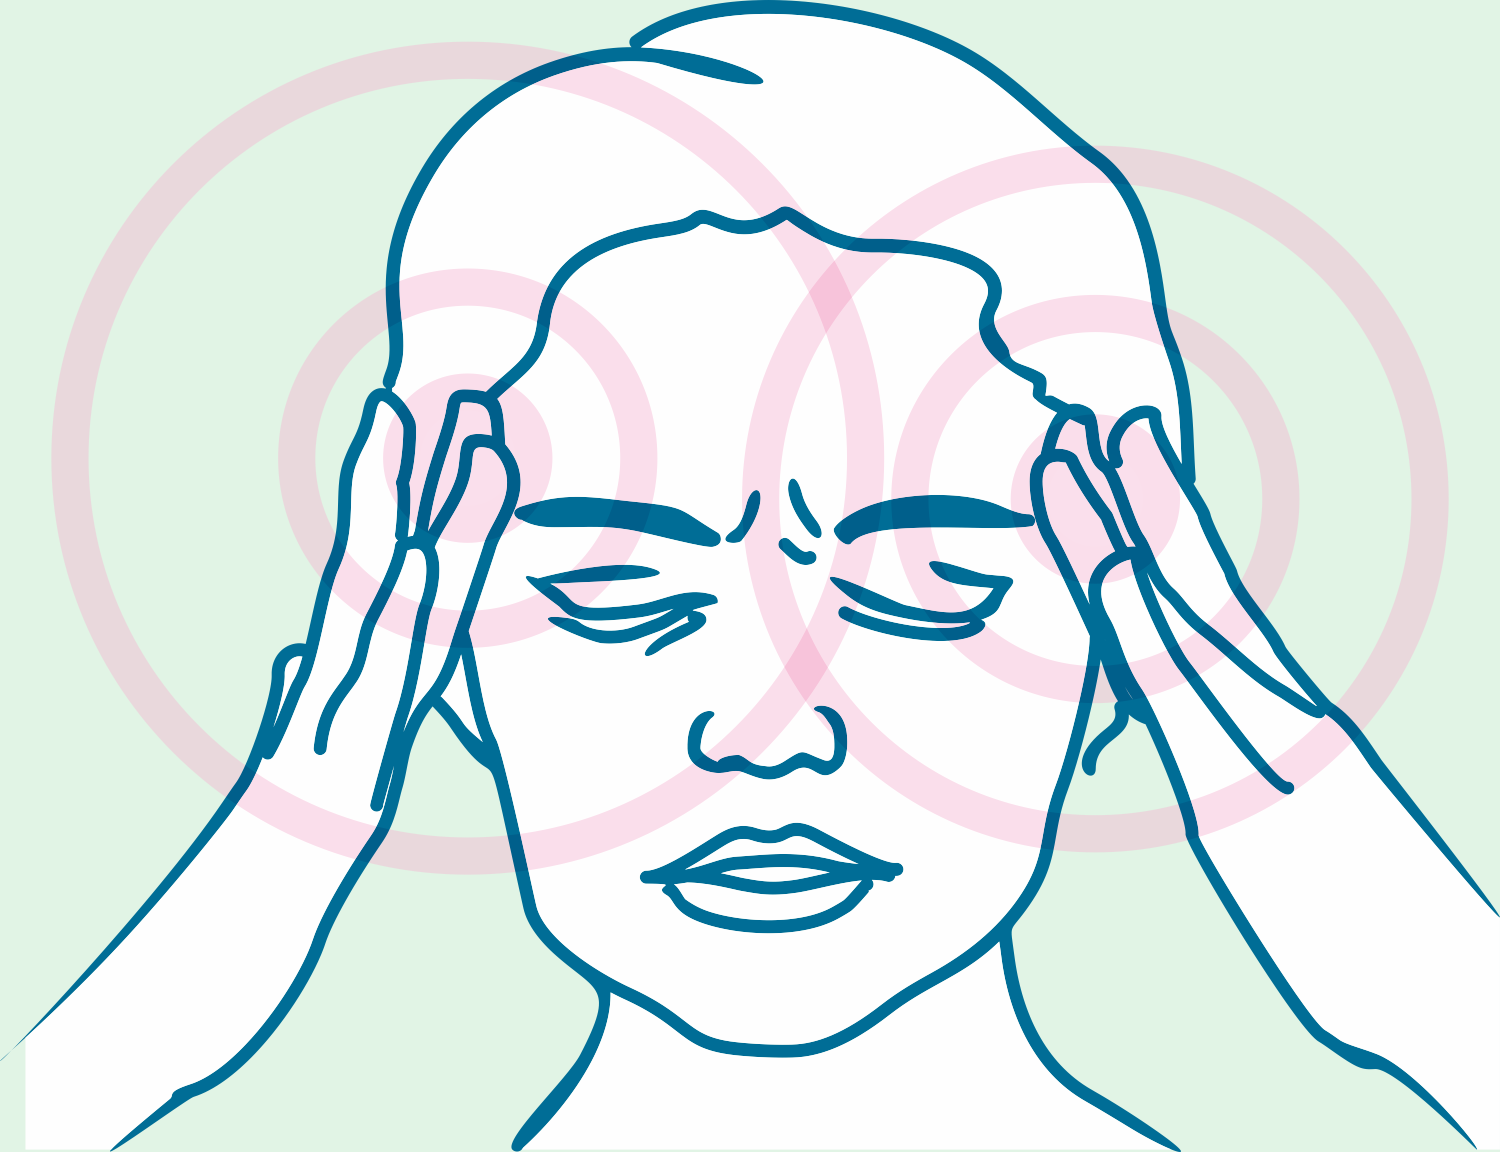 Migräne, pulsierender Kopfschmerz, pochende Schläfen, Müdigkeit